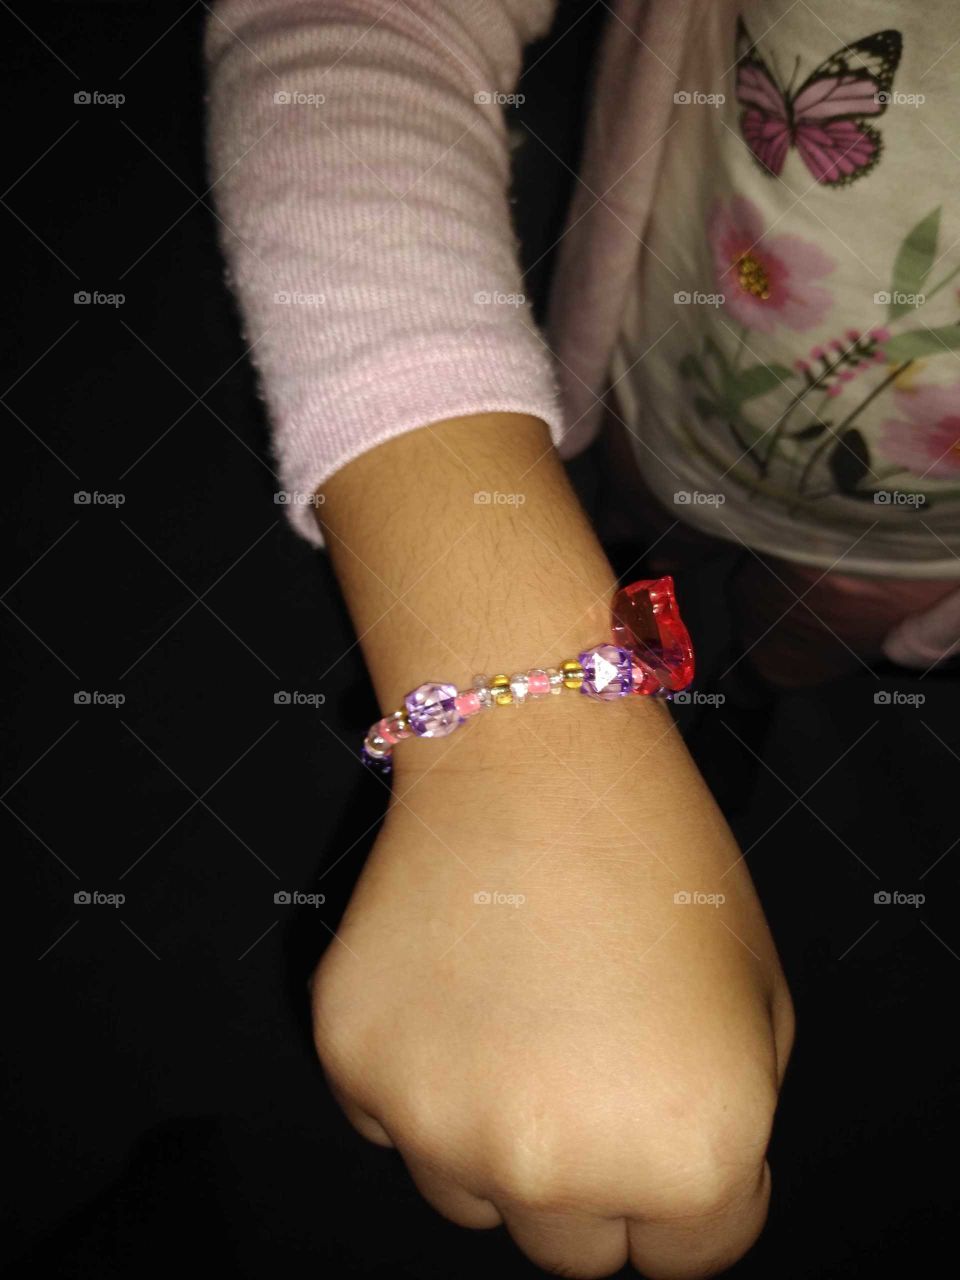 my niece new bracelet